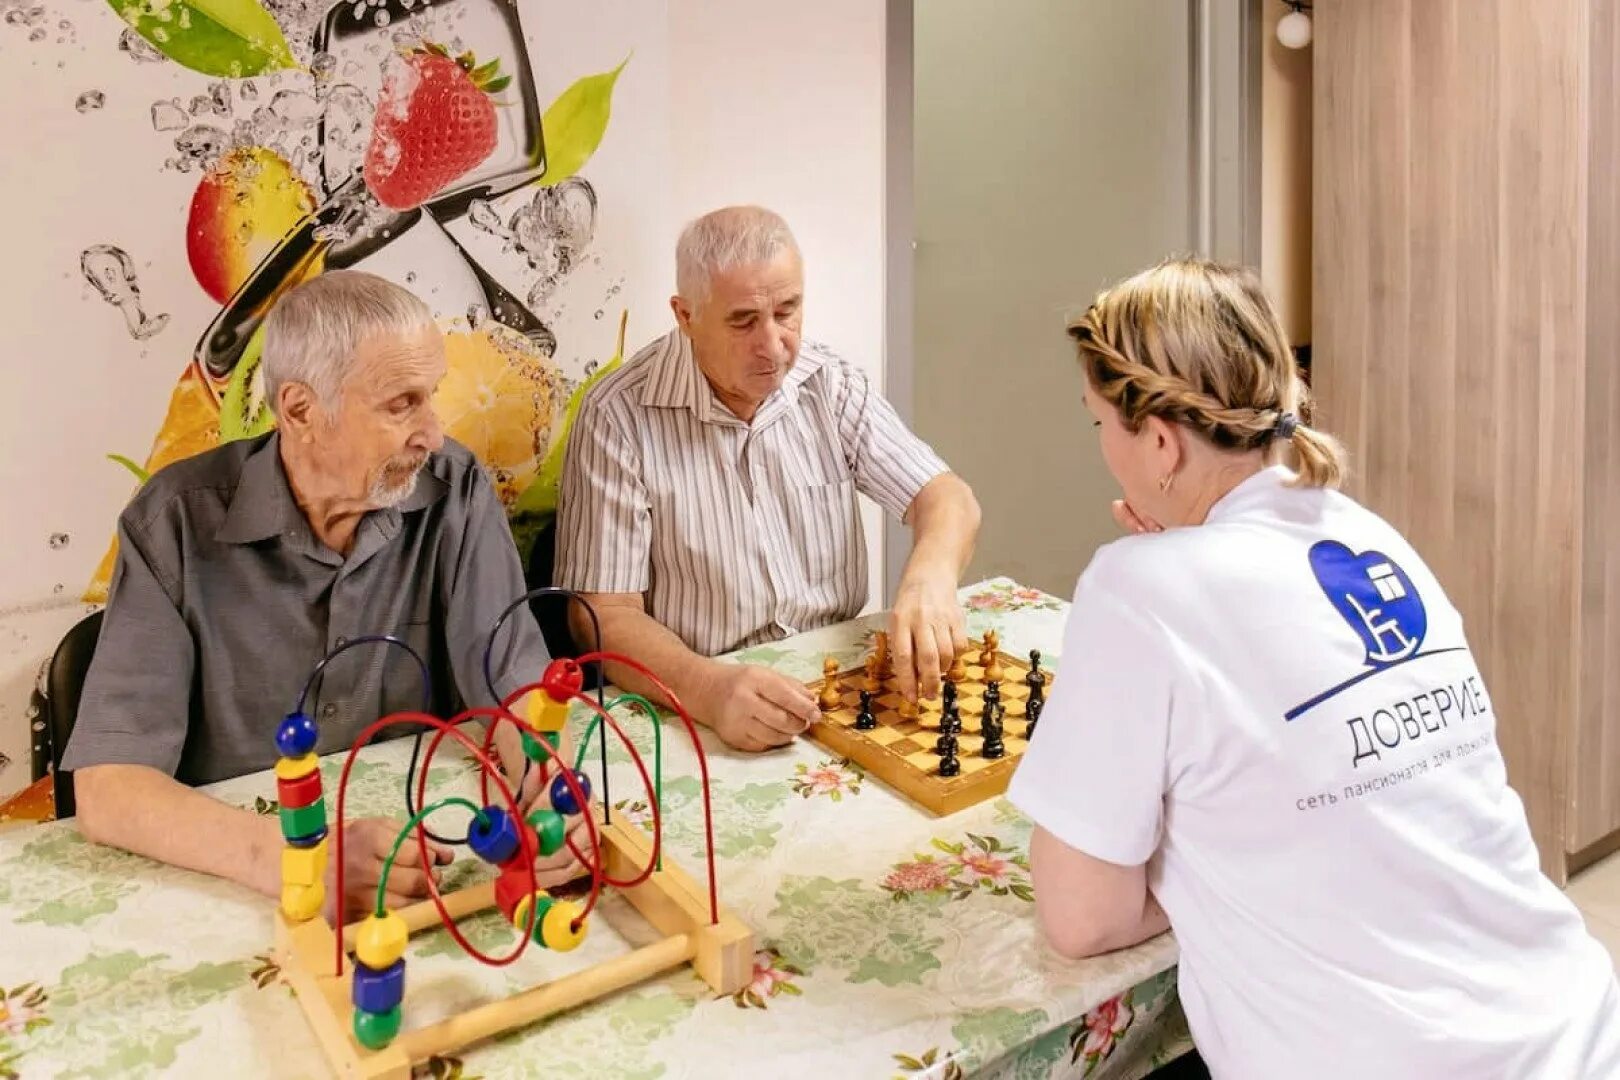 Развлечения для пожилых. Занятия для пожилых. Игрушки для пожилых людей. Организация досуга для пожилых. Игровая терапия для пожилых людей.